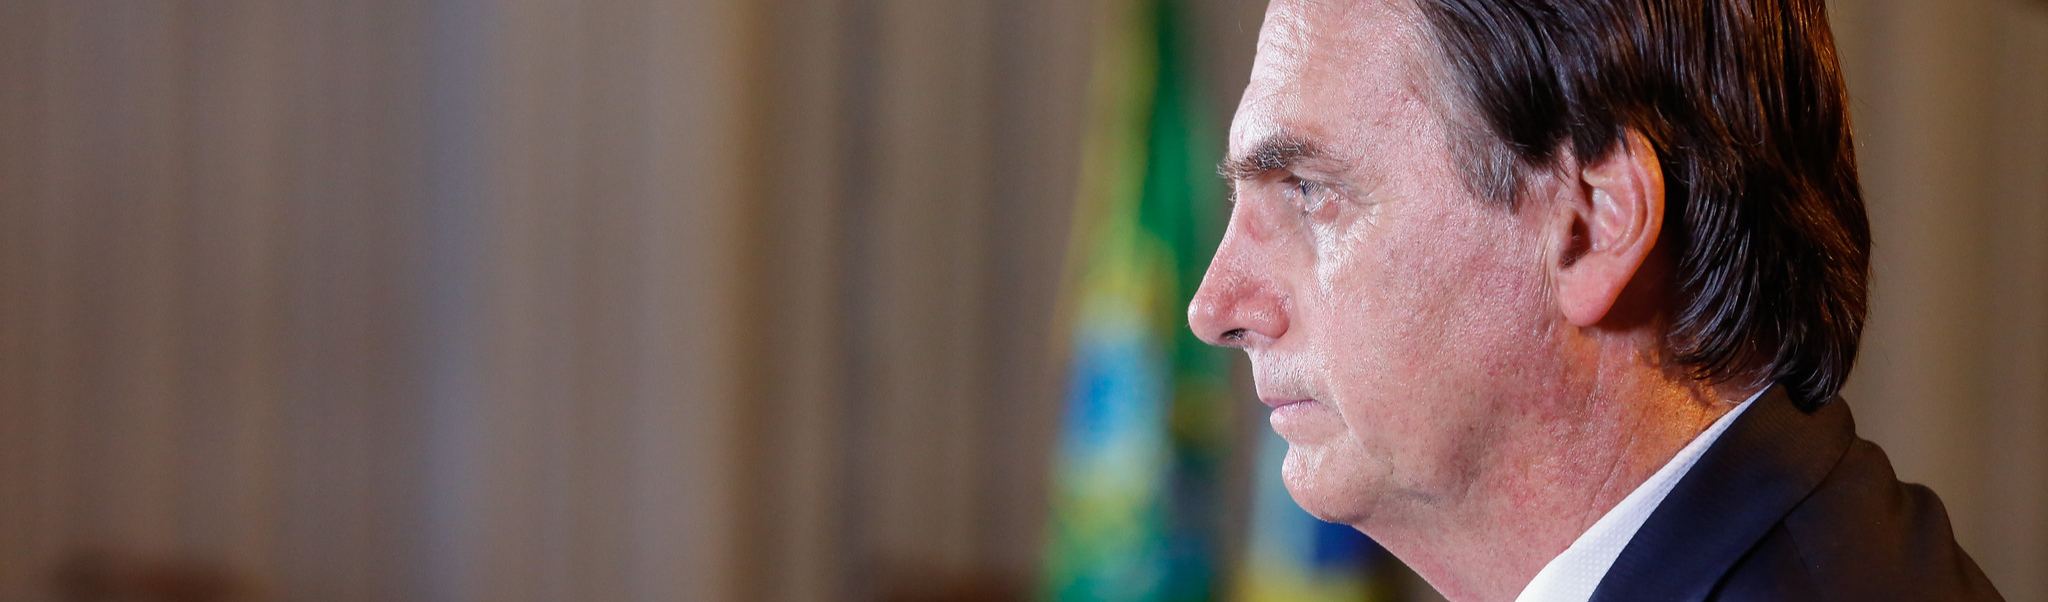 Para reeleição, Bolsonaro quer política externa aos moldes da ditadura e subalterna à OCDE